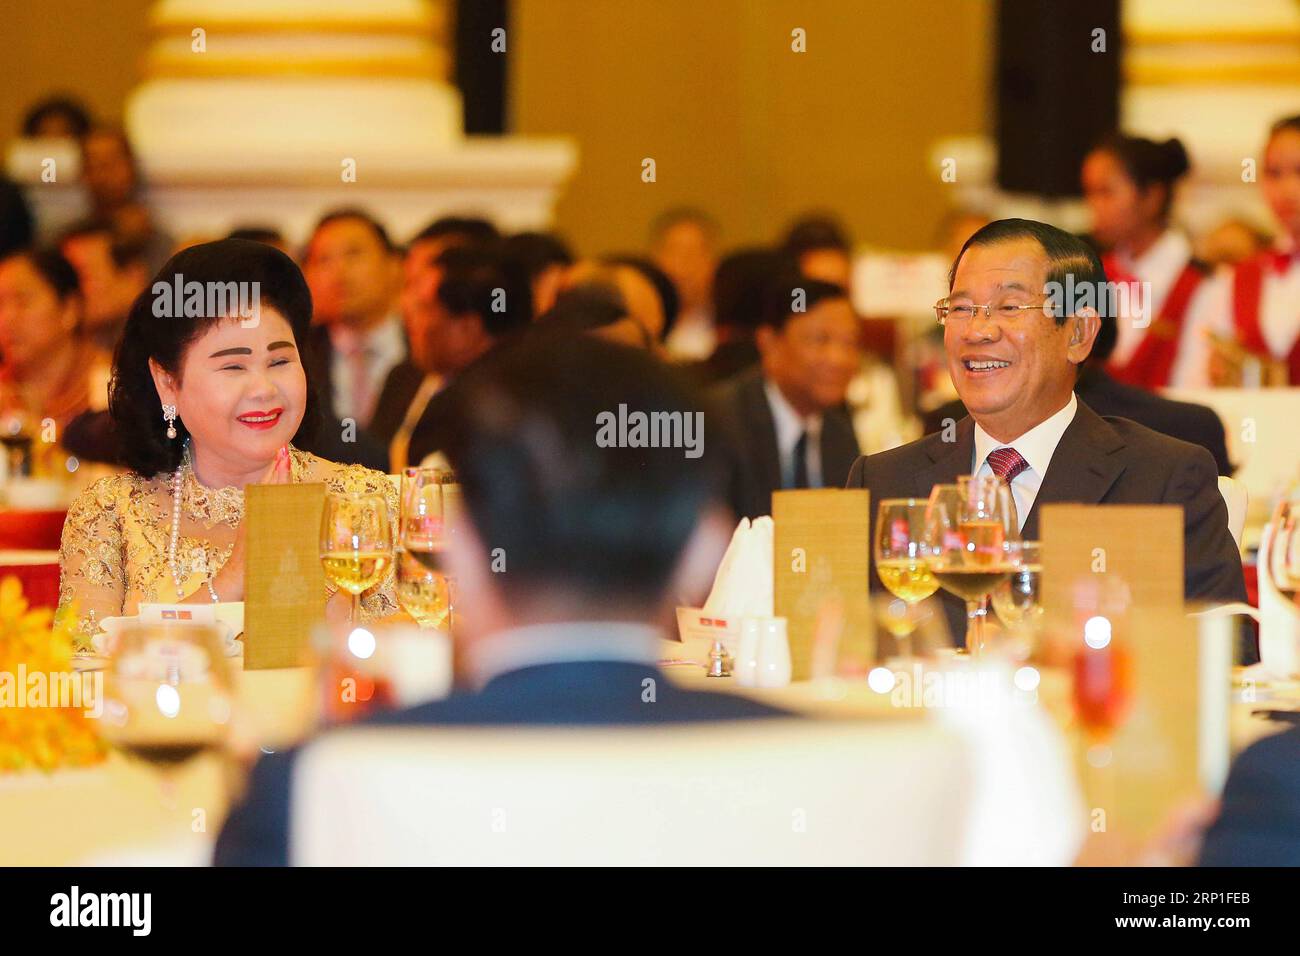 (180703) -- PHNOM PENH, le 3 juillet 2018 -- le Premier ministre cambodgien Samdech Techo Hun Sen et son épouse Bun Rany assistent à un dîner de gala célébrant le 60e anniversaire de l'établissement des relations diplomatiques entre la Chine et le Cambodge à Phnom Penh, Cambodge, le 2 juillet 2018.) (nxl) CAMBODGE-PHNOM PENH-CHINE-DIPLOMATIE-60E ANNIVERSAIRE Pheorum PUBLICATIONxNOTxINxCHN Banque D'Images